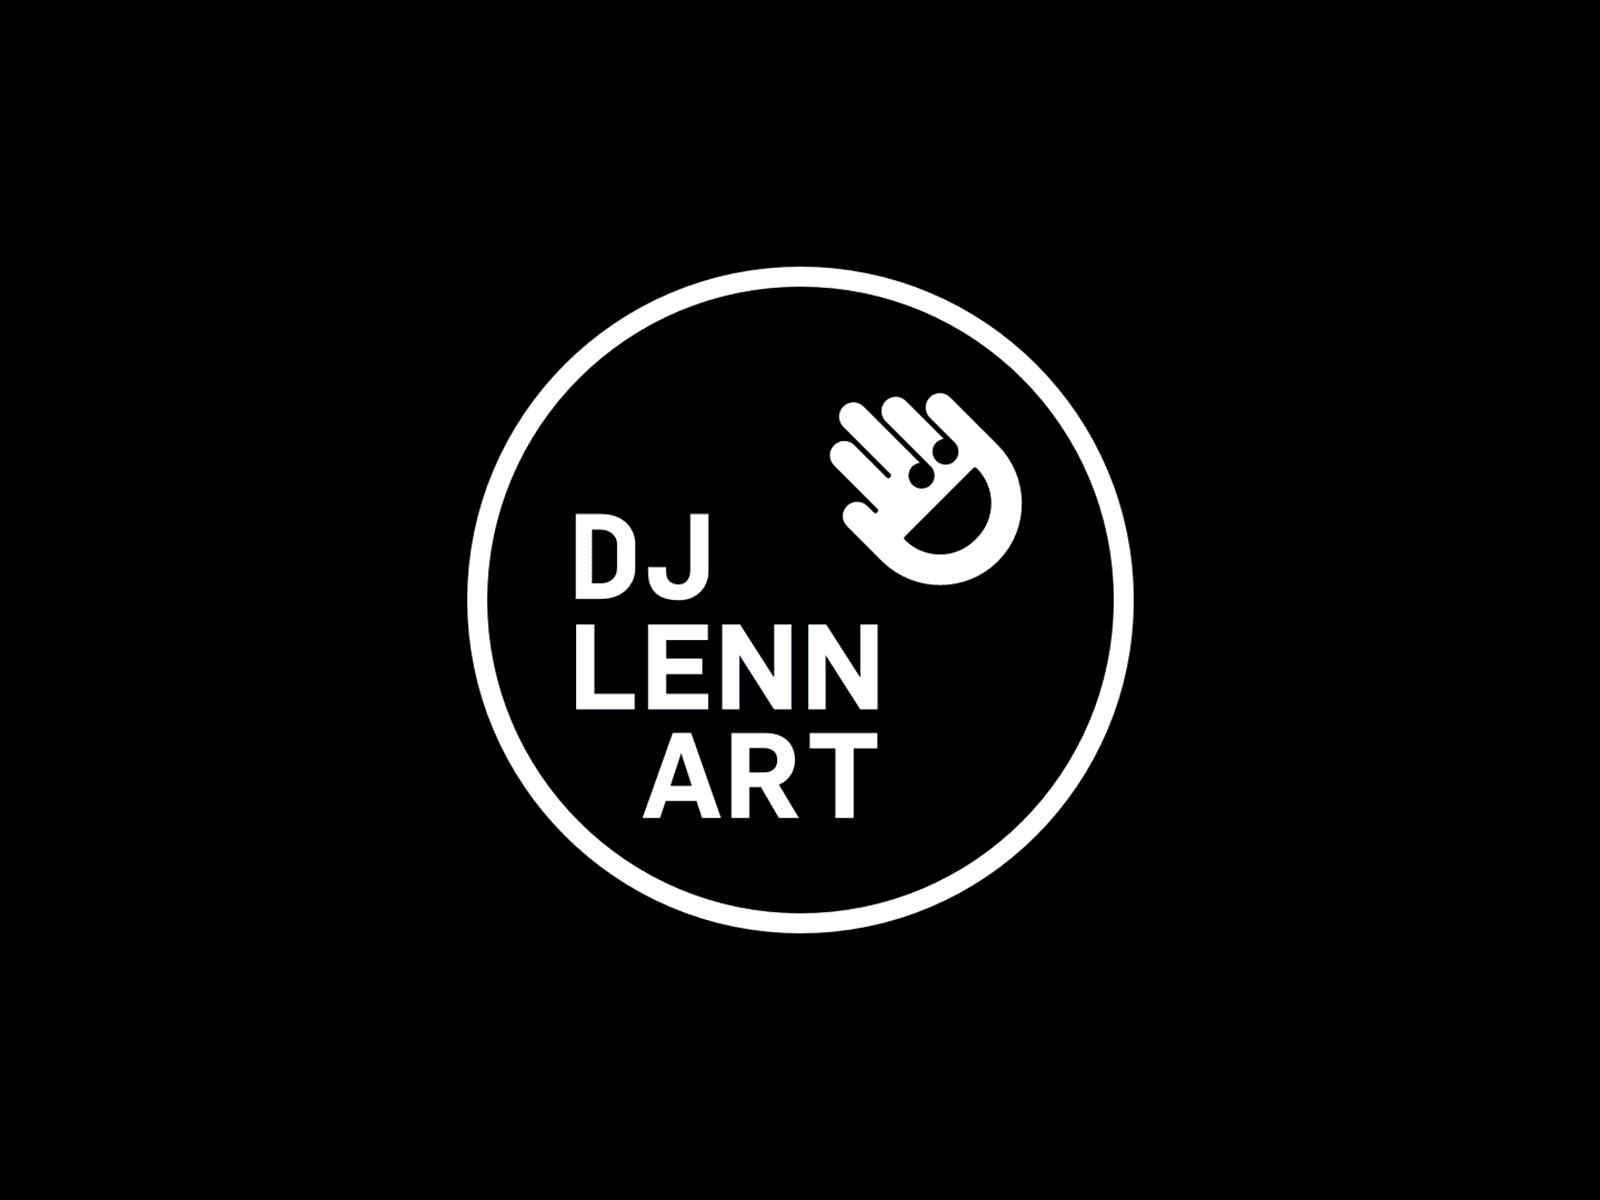 Logo for DJ LennArt art designfritze dj fun kreativfritze logo music